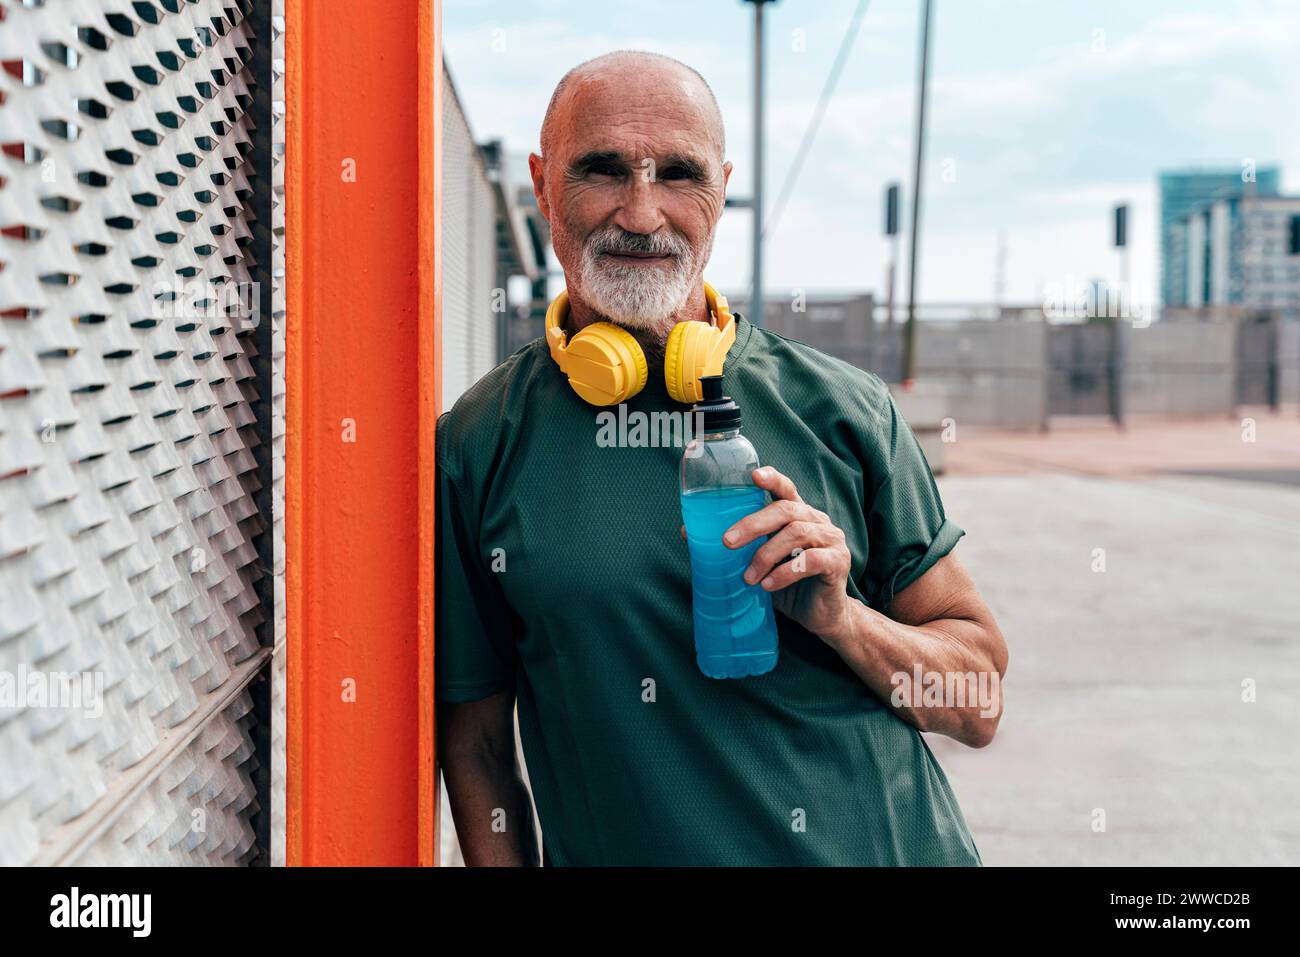 Aktiver Seniorenmann mit kabellosen Kopfhörern, die Energy Drink halten und sich an einen Zaun lehnen Stockfoto